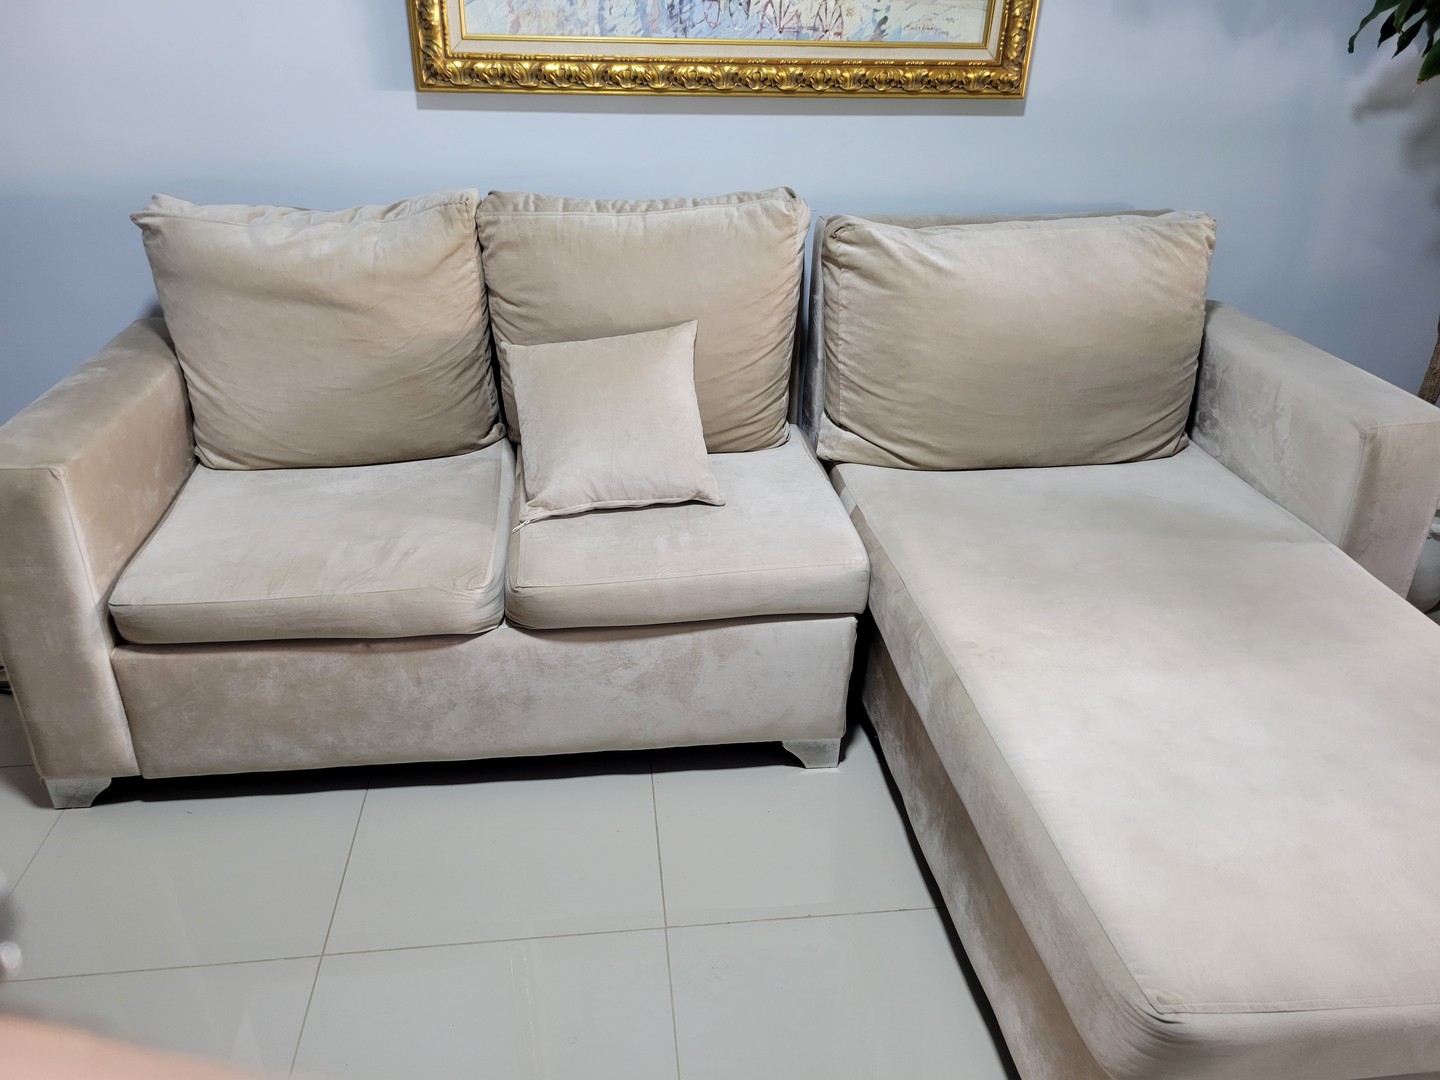 muebles y colchones - Mueble en L de tres plazas, usado en buenas condiciones, color crema.
 1